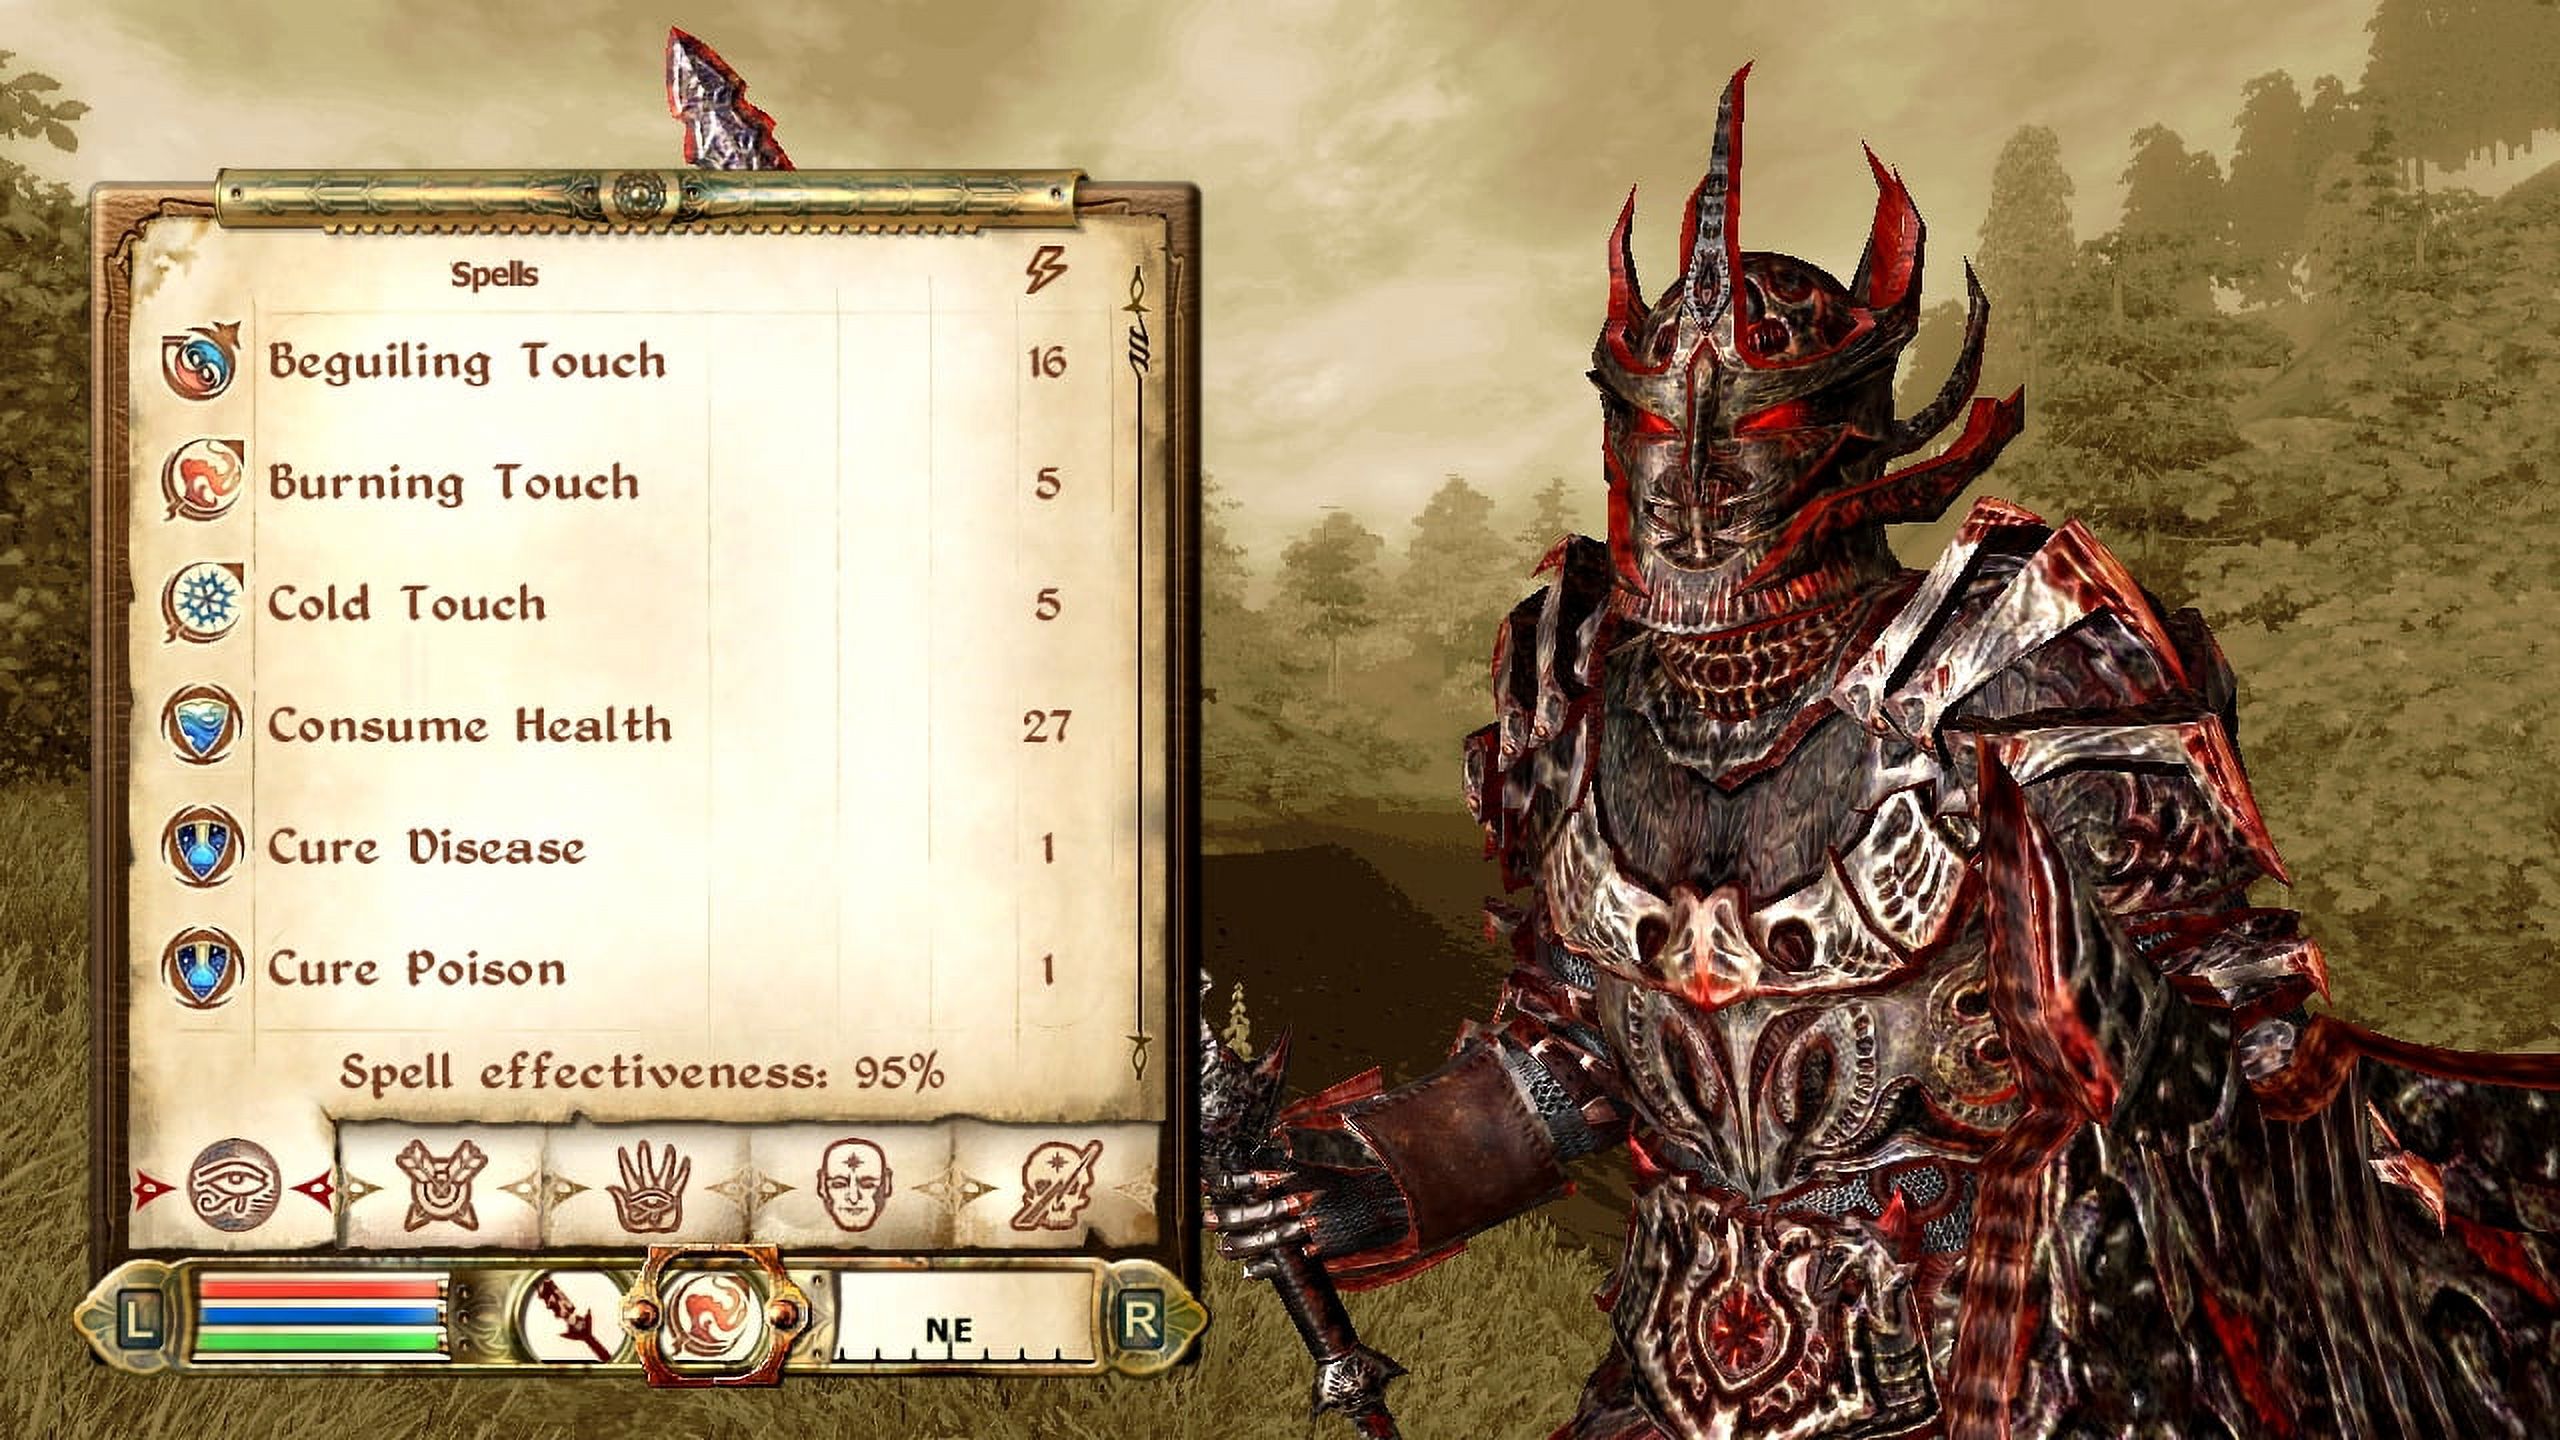 Take-Two The Elder Scrolls IV: Oblivion - image 4 of 10